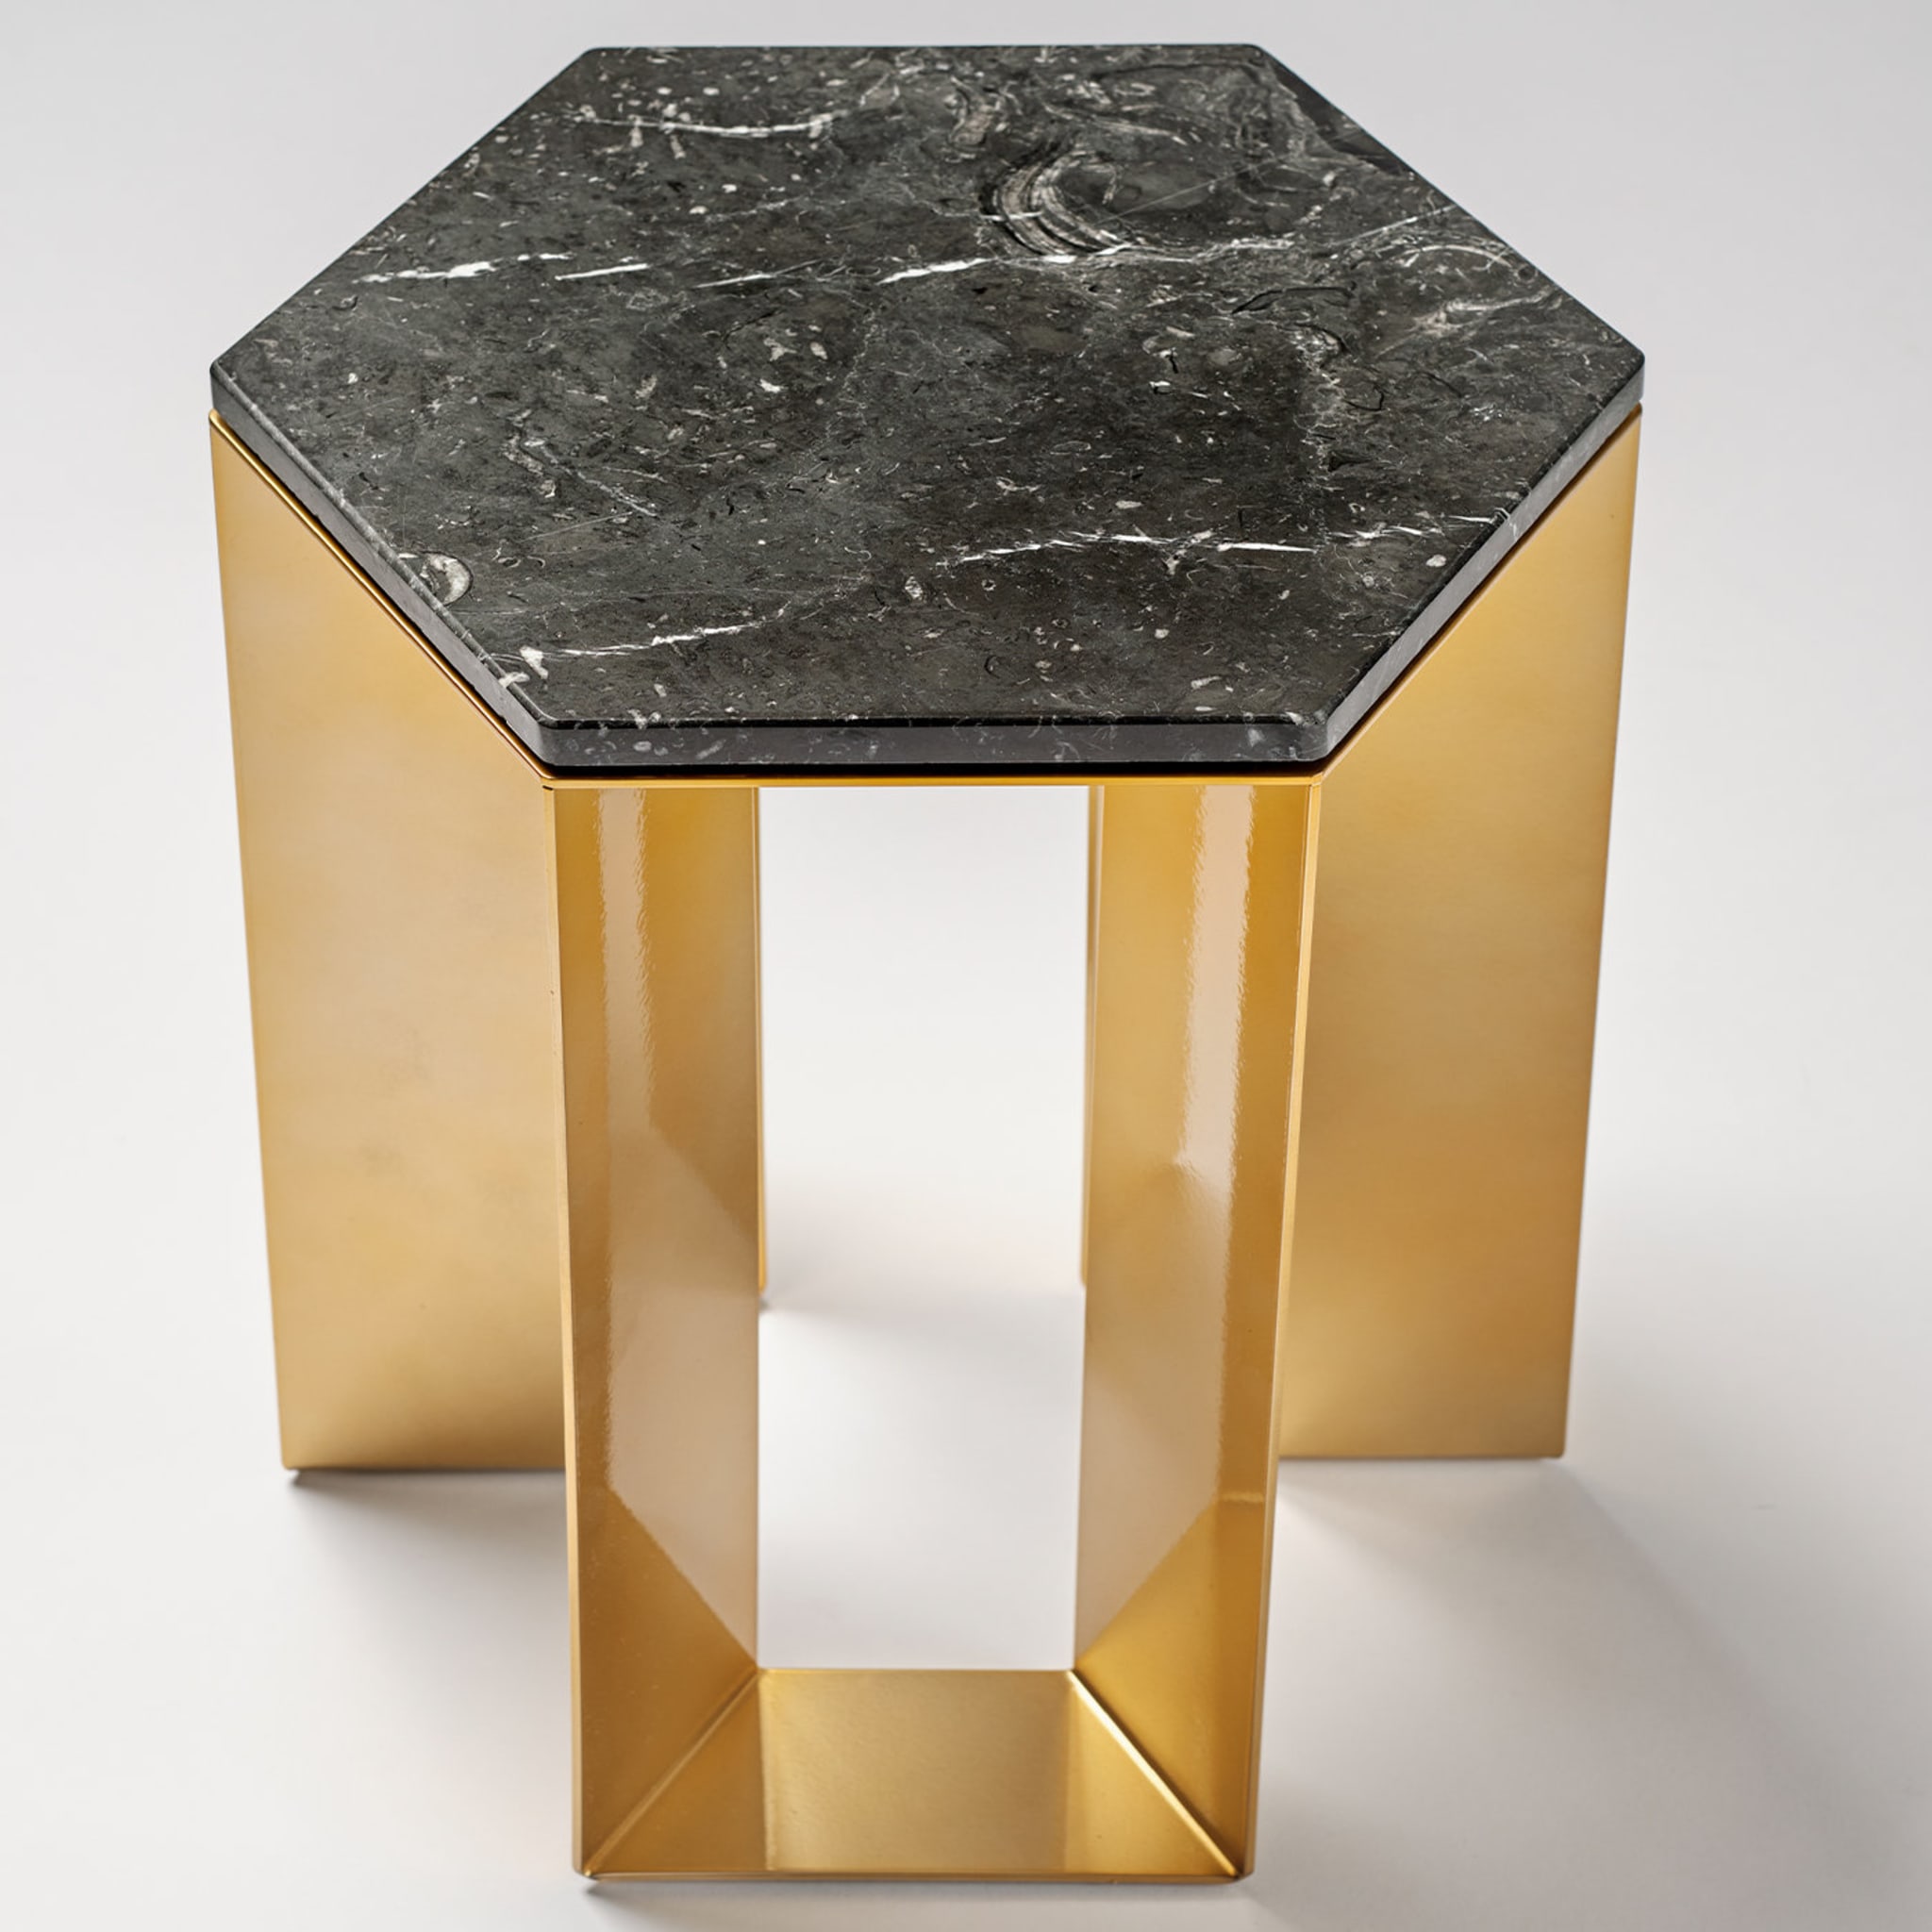 Alato Black and Gold Side Table by Antonio Saporito - Alternative view 3